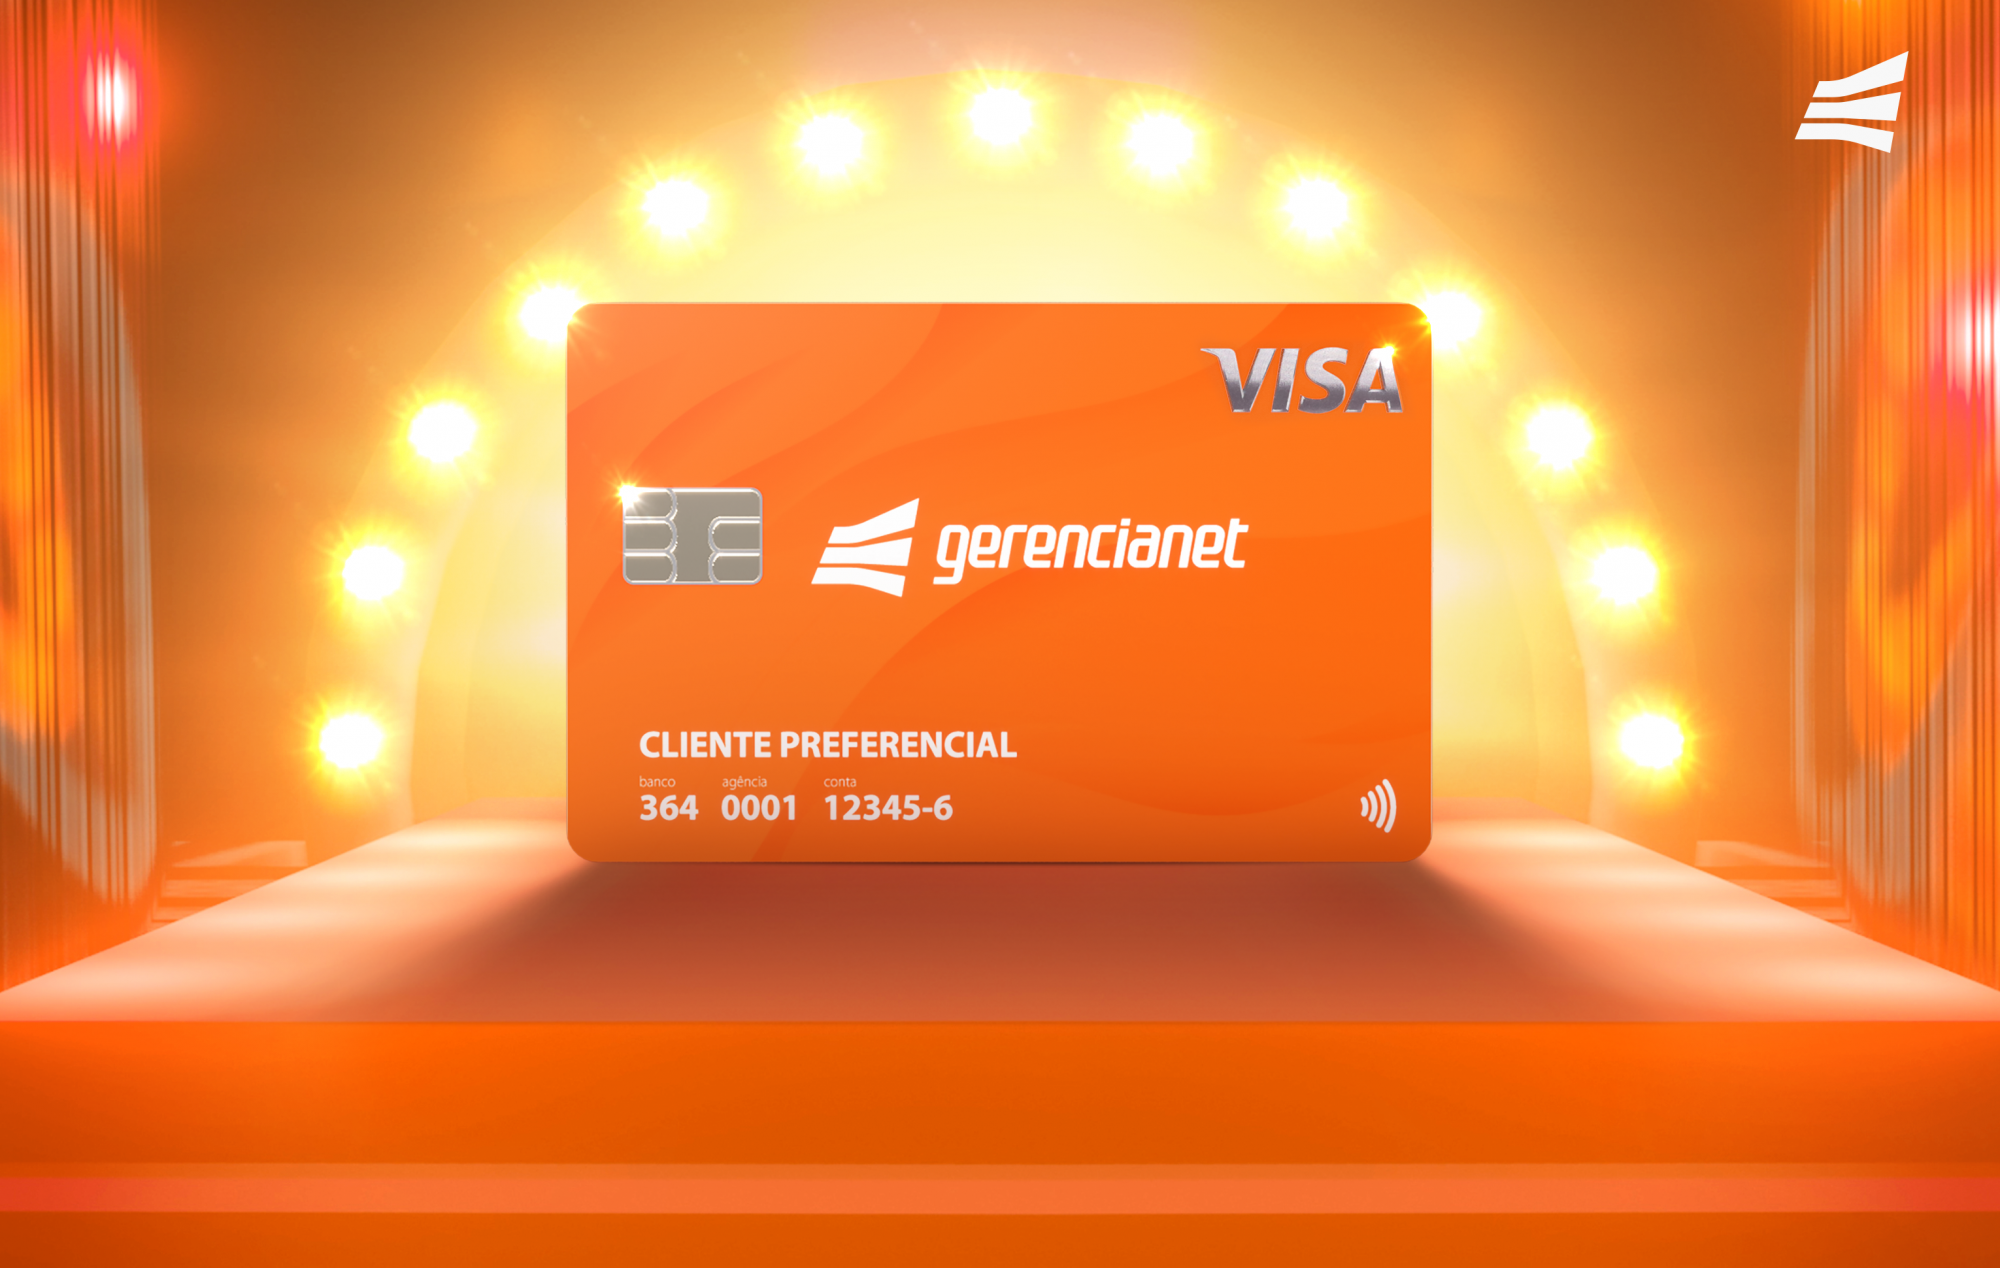 Ilustração 3d do Cartão de Crédito Gerencianet em cima de um palco e com várias lâmpadas amarelas atrás. O cenário é todo laranja.